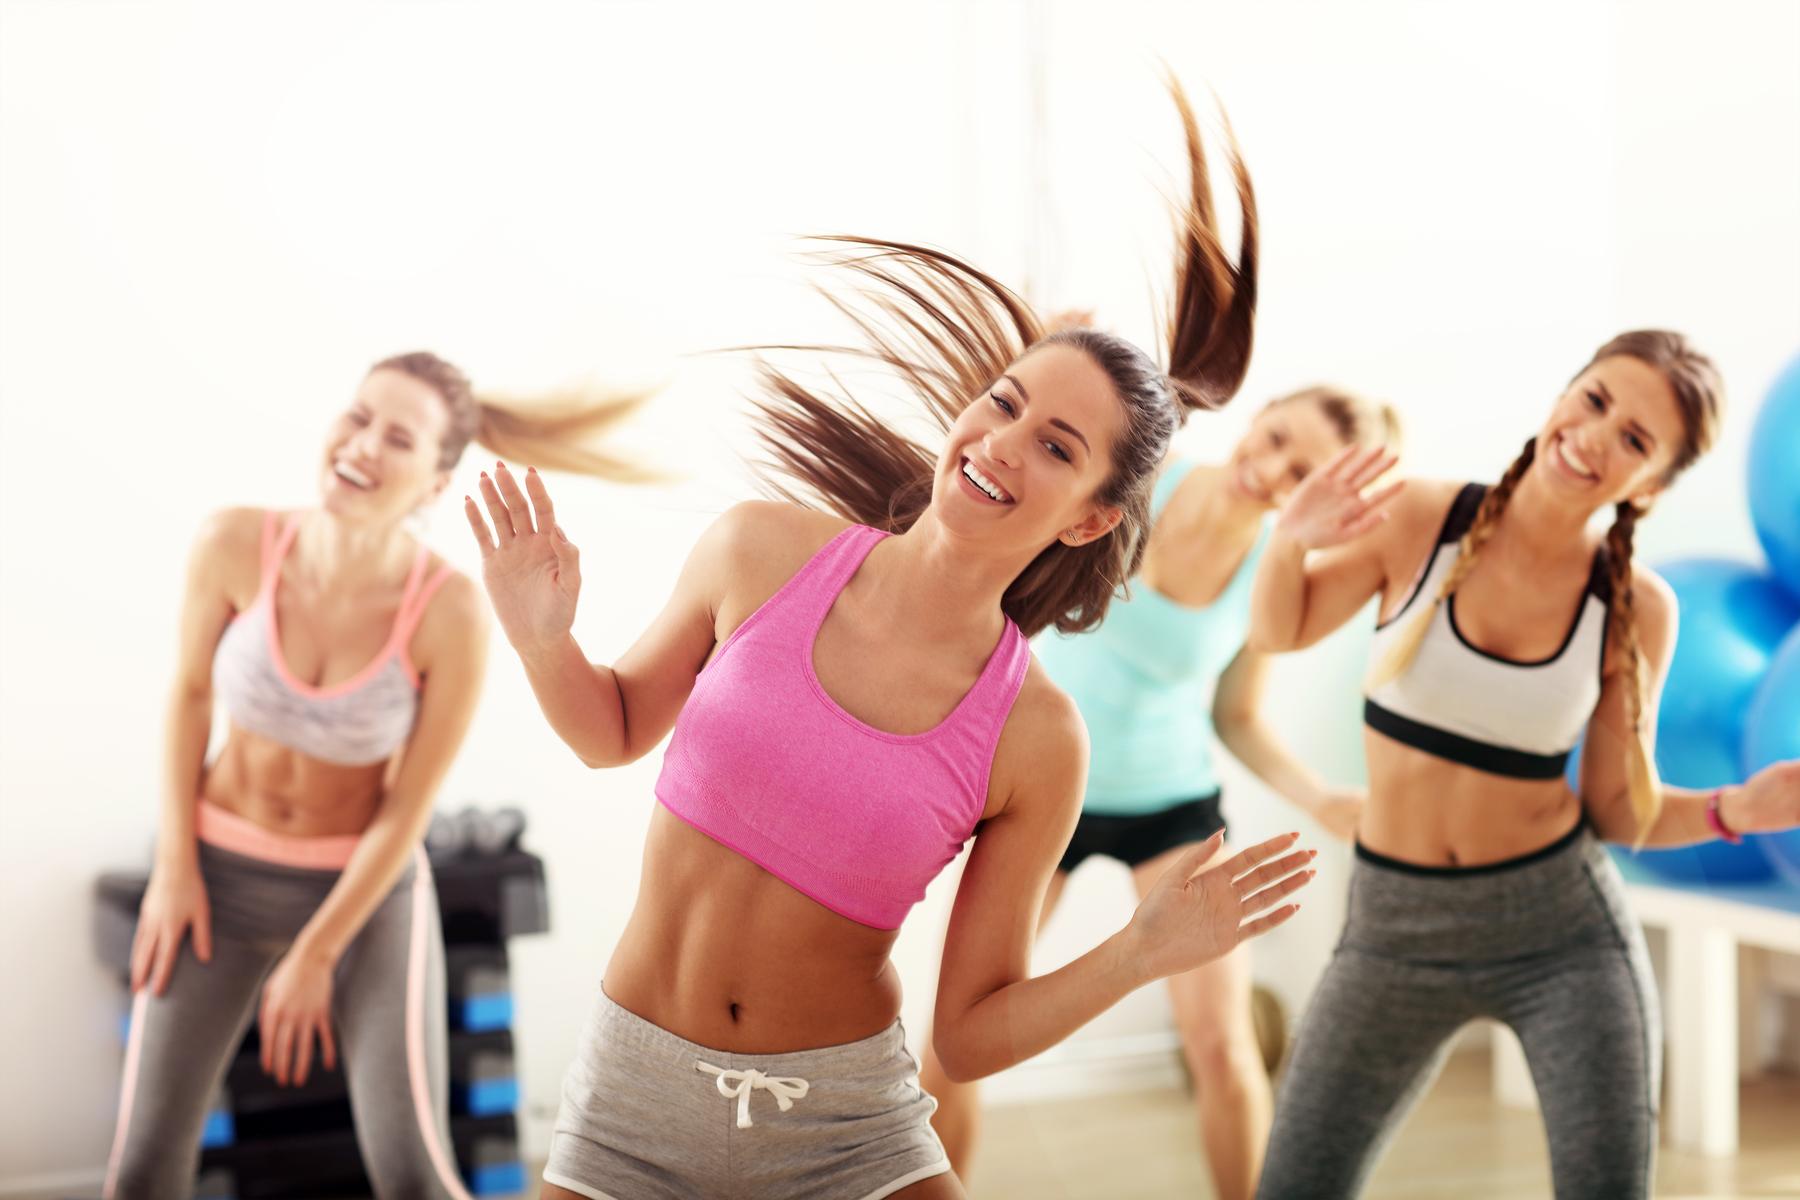 Los beneficios de bailar | Cómo hacer ejercicio bailando